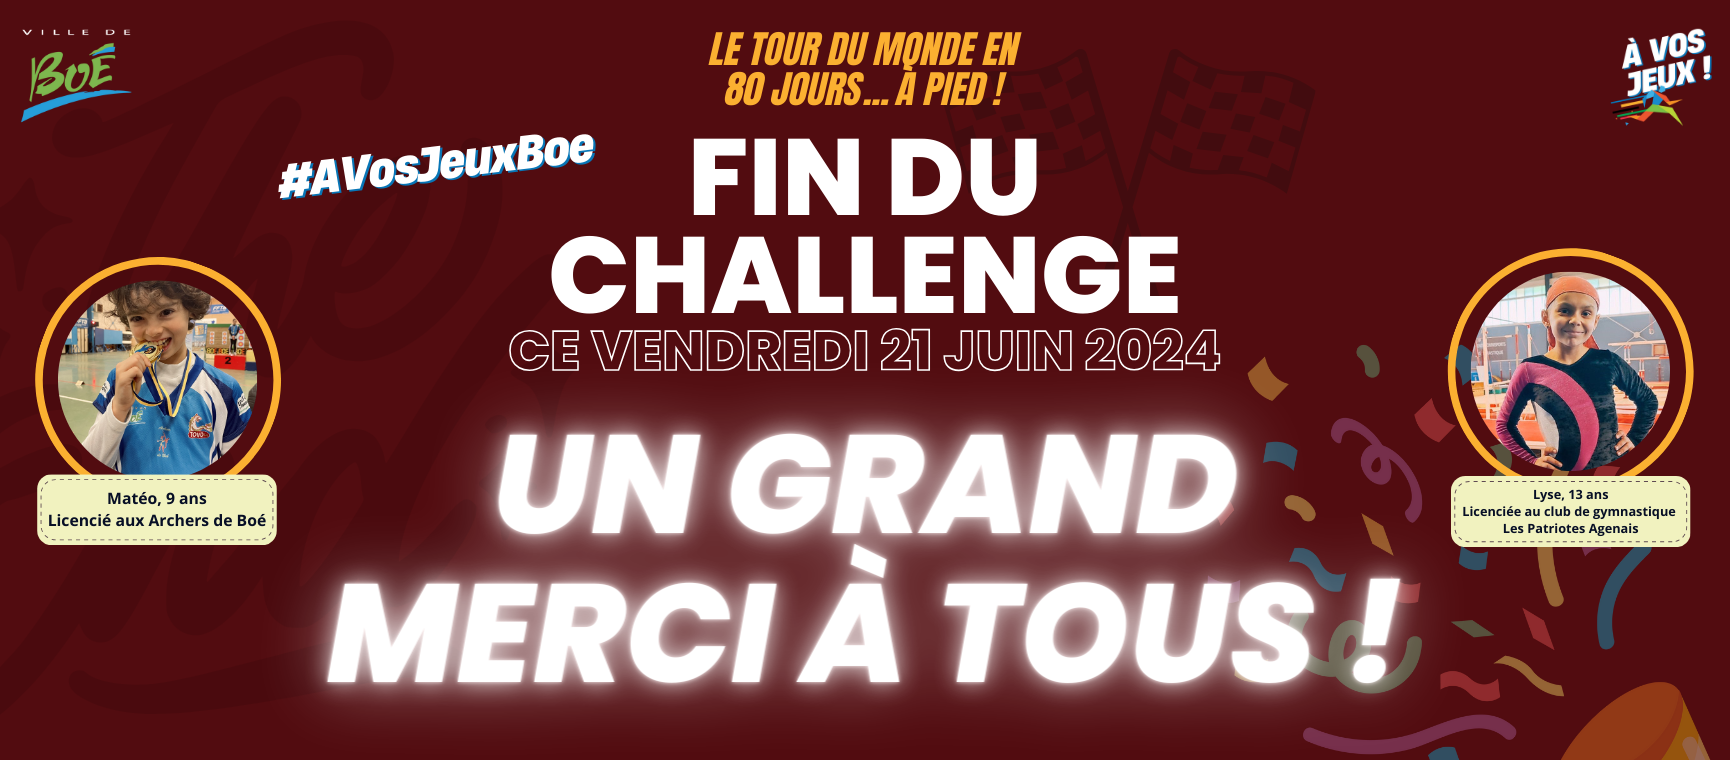 Dernières actualités - Fin du challenge solidaire "Le tour du monde en 80 jours... à pied !"